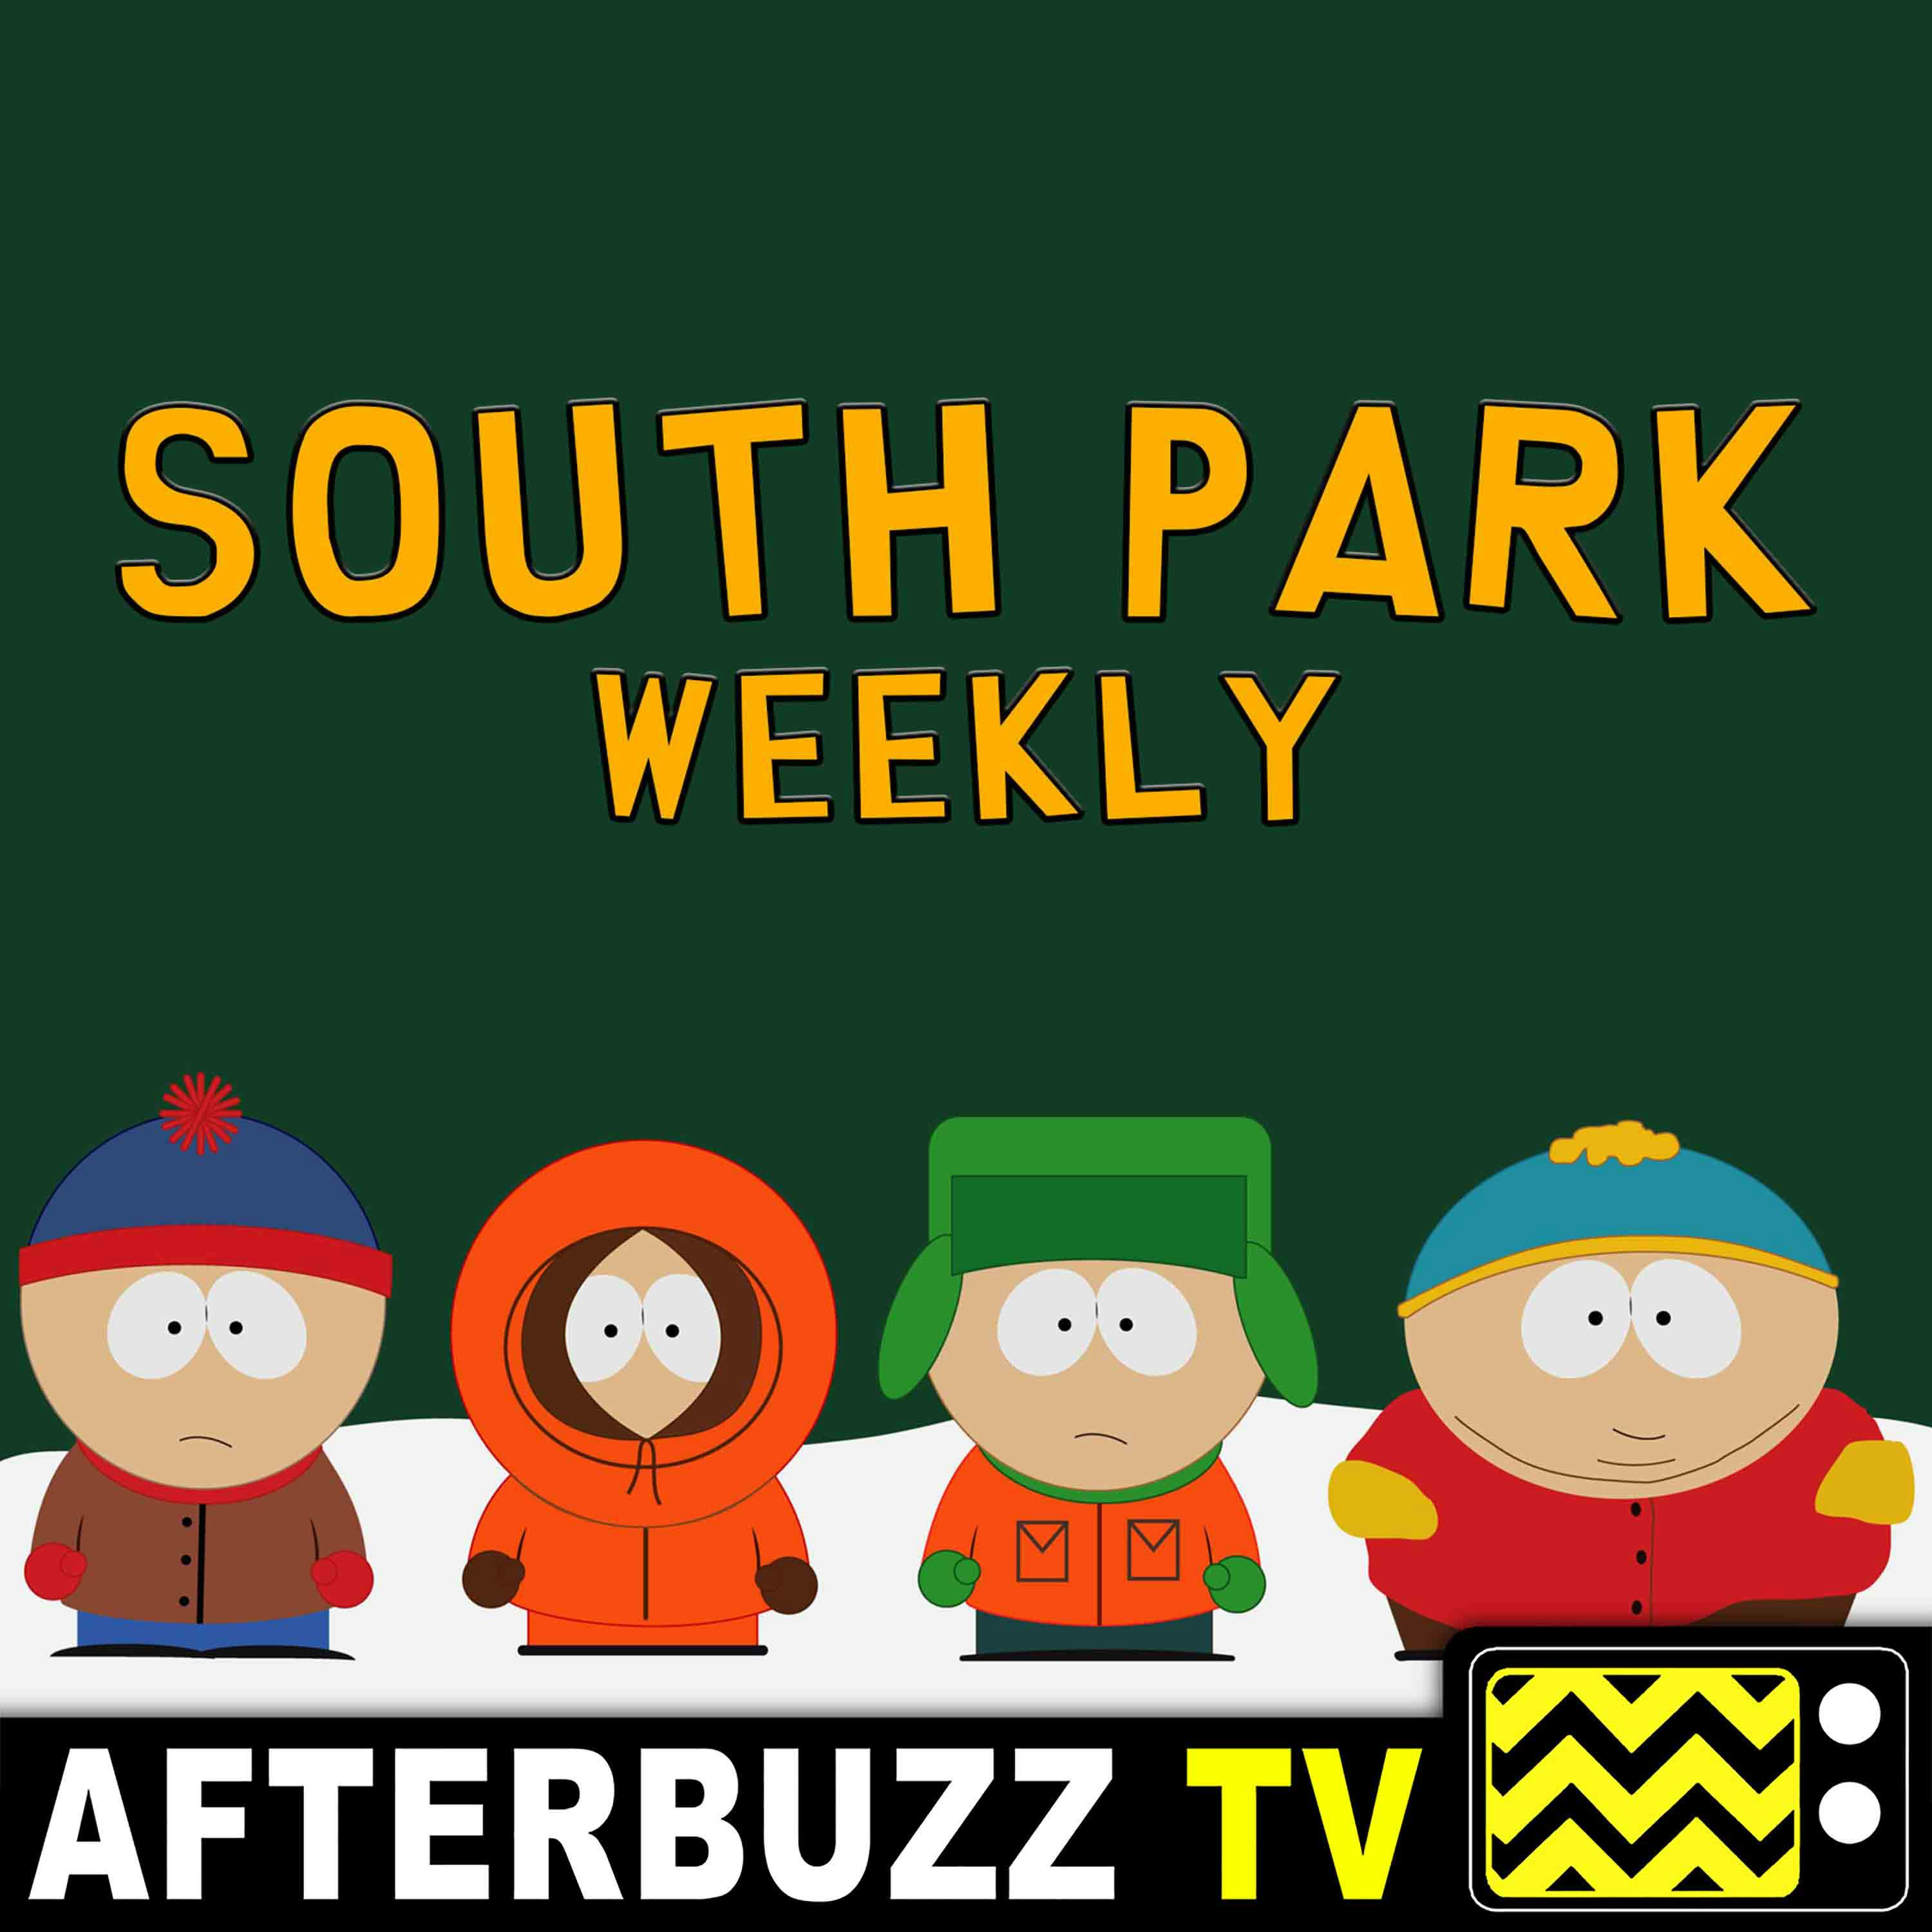 "Let Them Eat Goo" Season 23 Episode 4 'South Park' Review